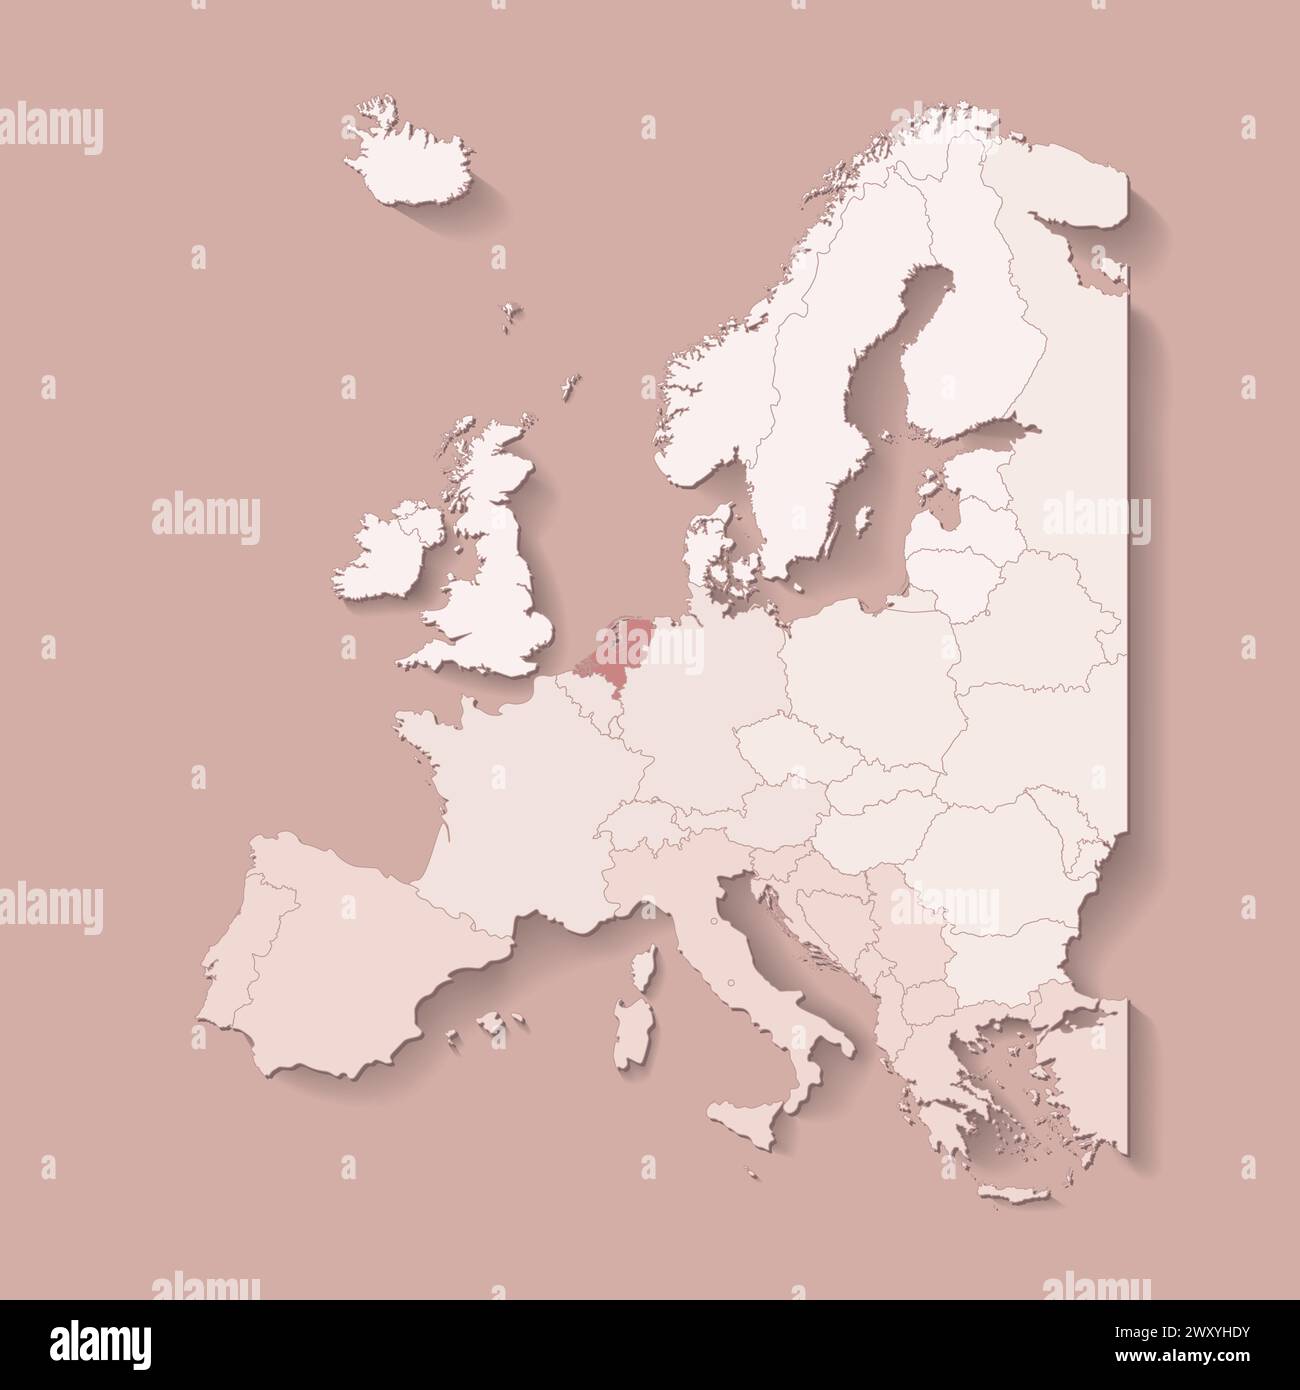 Illustrazione vettoriale con terra europea con confini di stati e paese contrassegnato Paesi Bassi. Mappa politica di colore marrone con occidentale, sud e così via Illustrazione Vettoriale